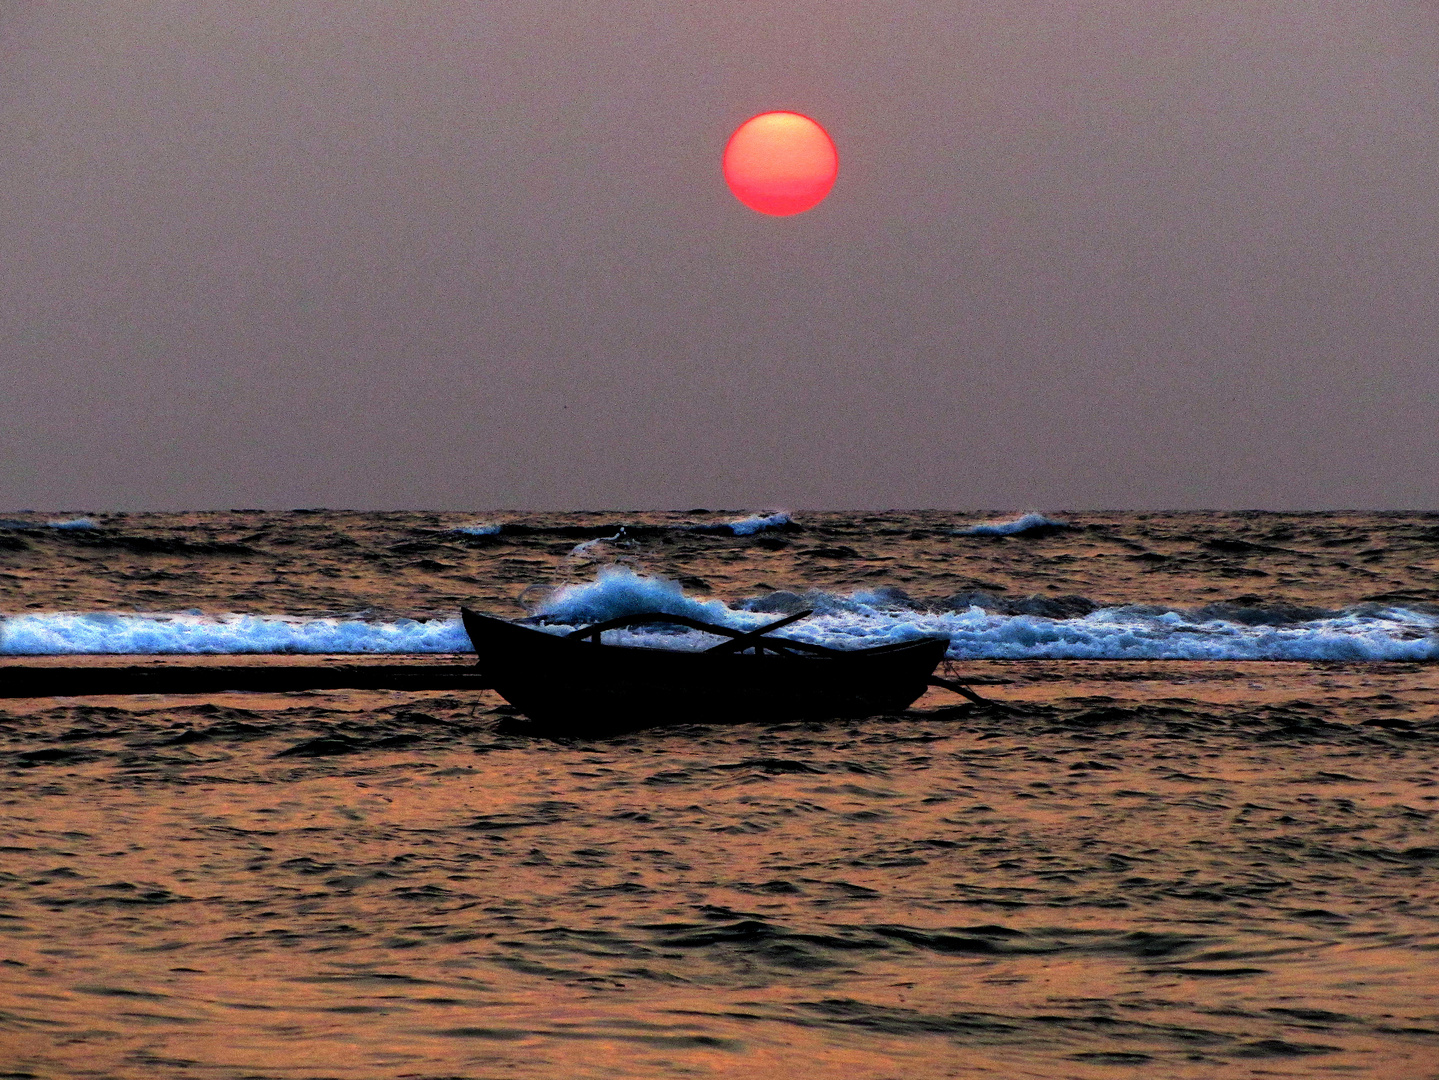 Sonnenuntergang am indischen Ozean